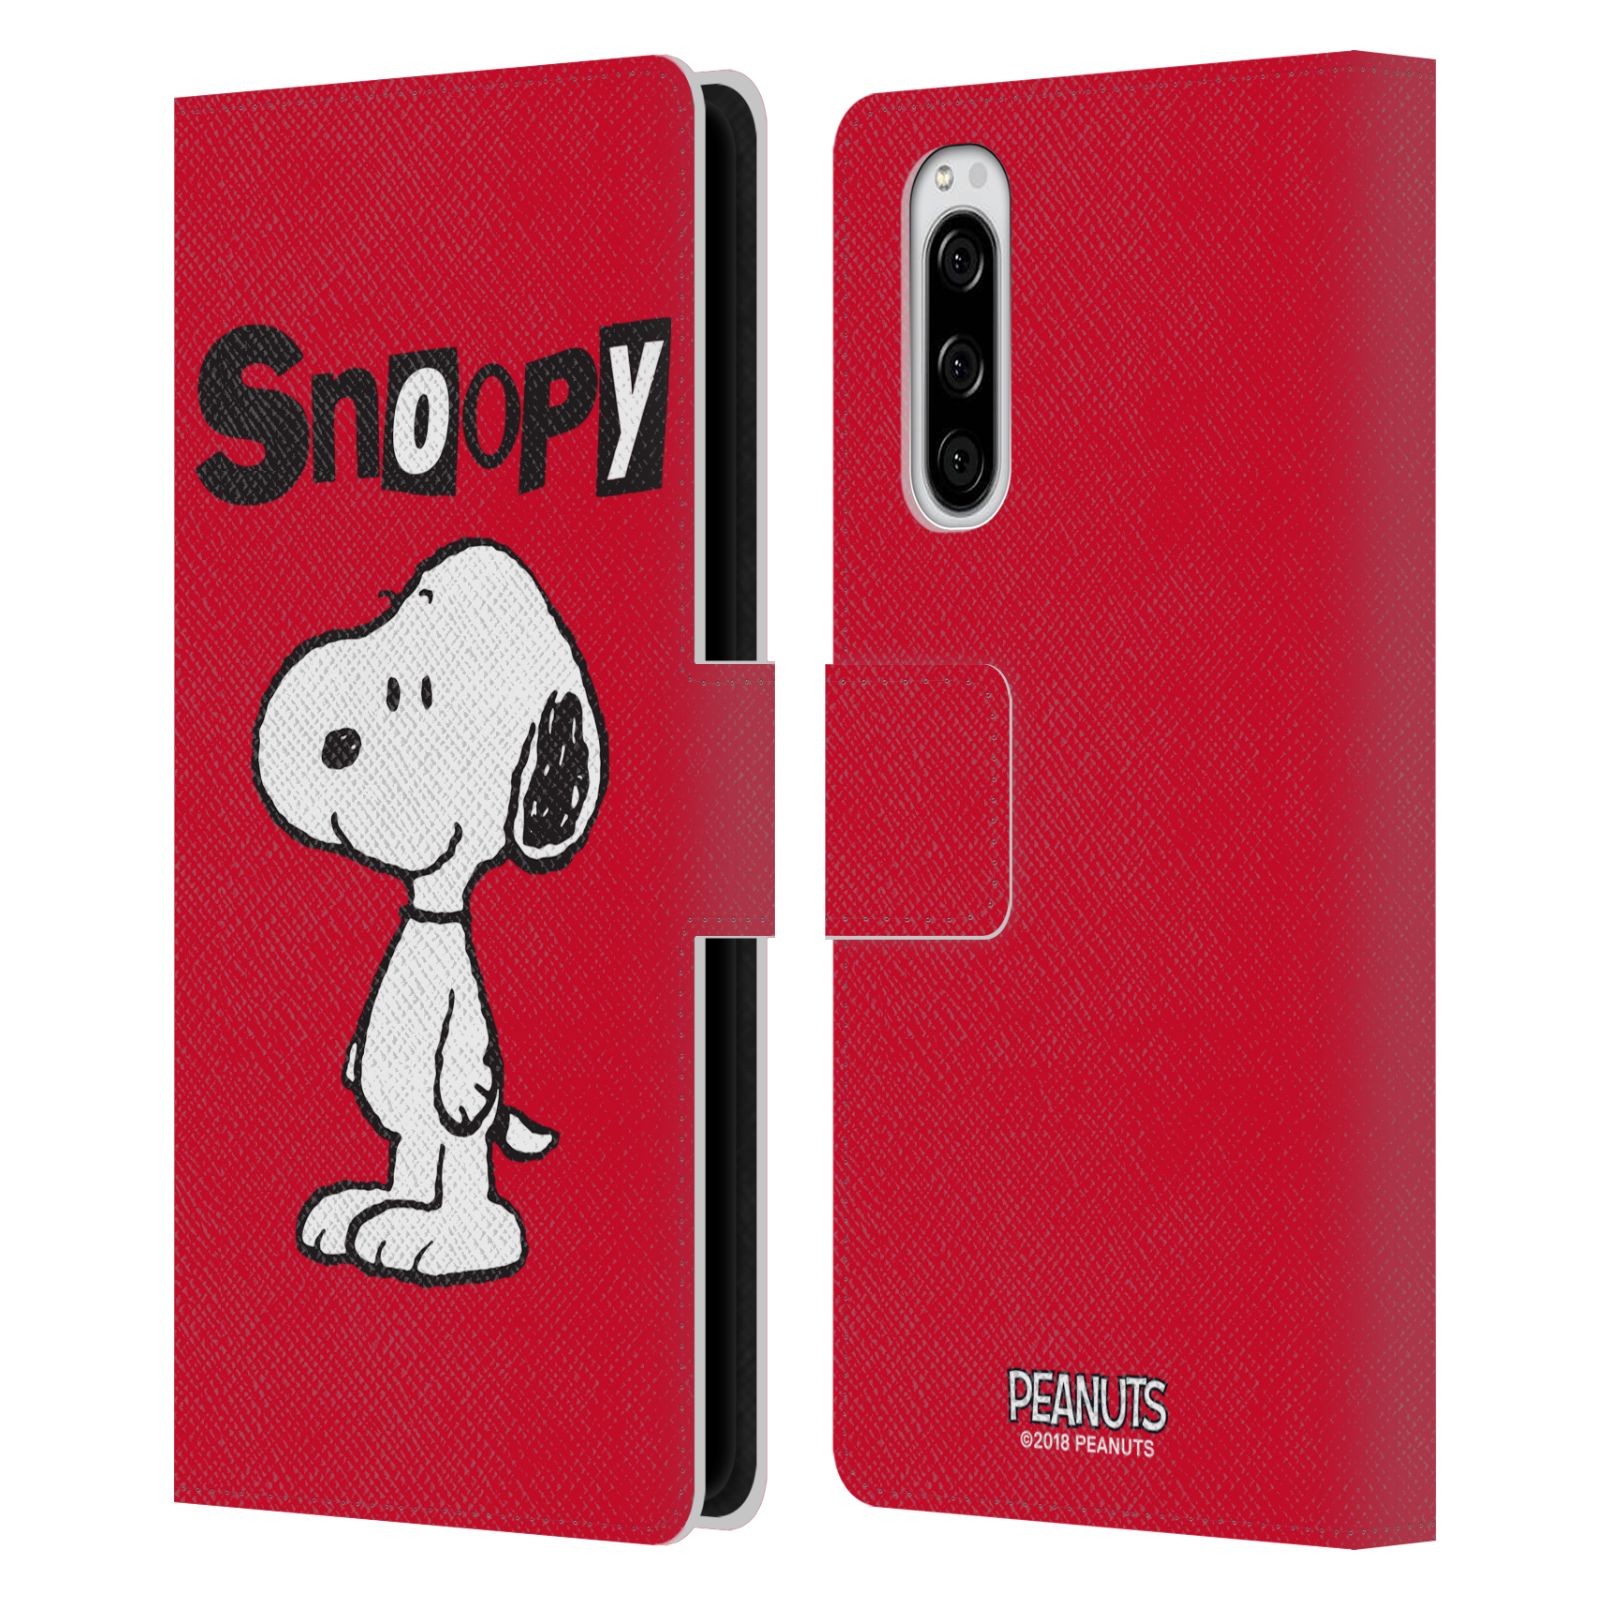 Pouzdro na mobil Sony Xperia 5  - HEAD CASE - Peanuts - Snoopy červená